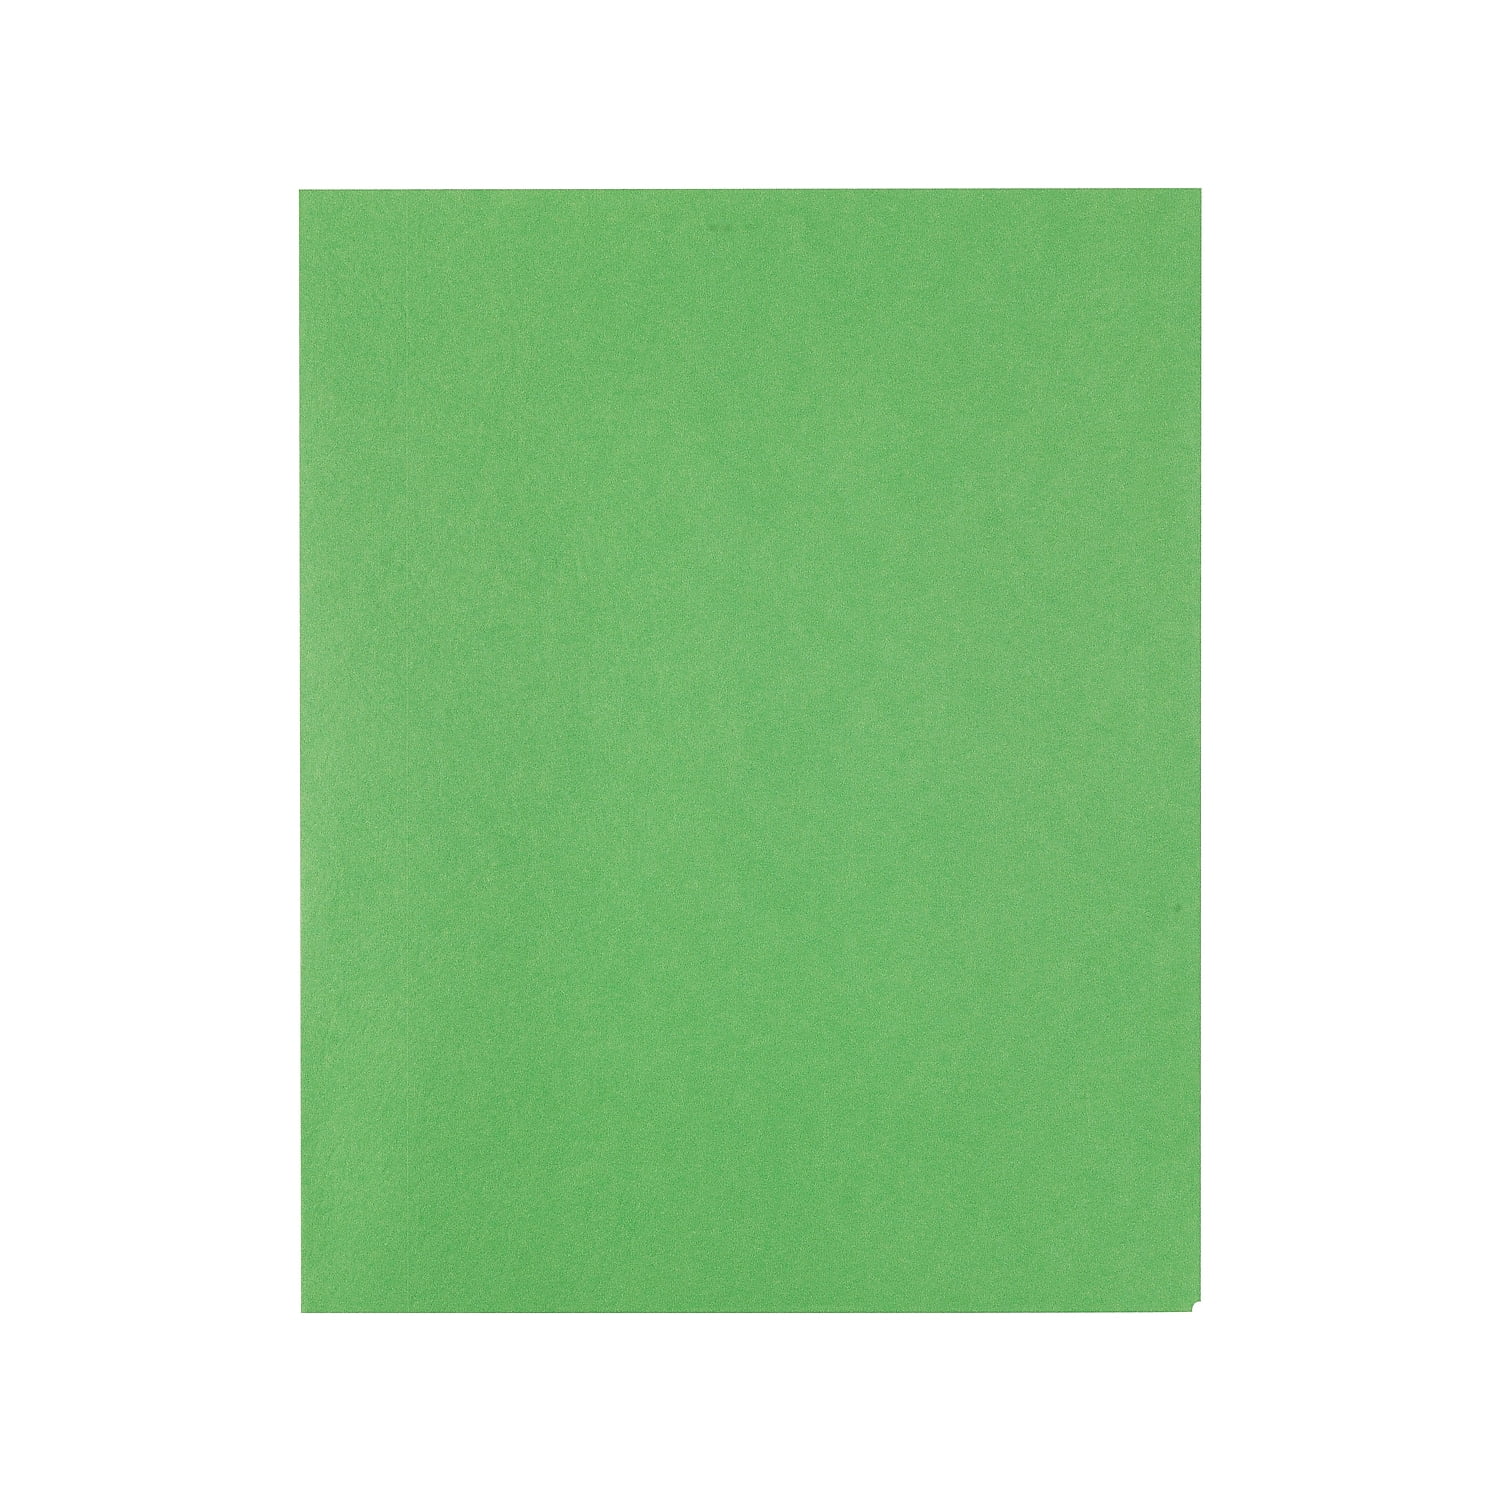 Staples School Grade 2 Pocket Folder Green 25/Box (50753/27533-CC)